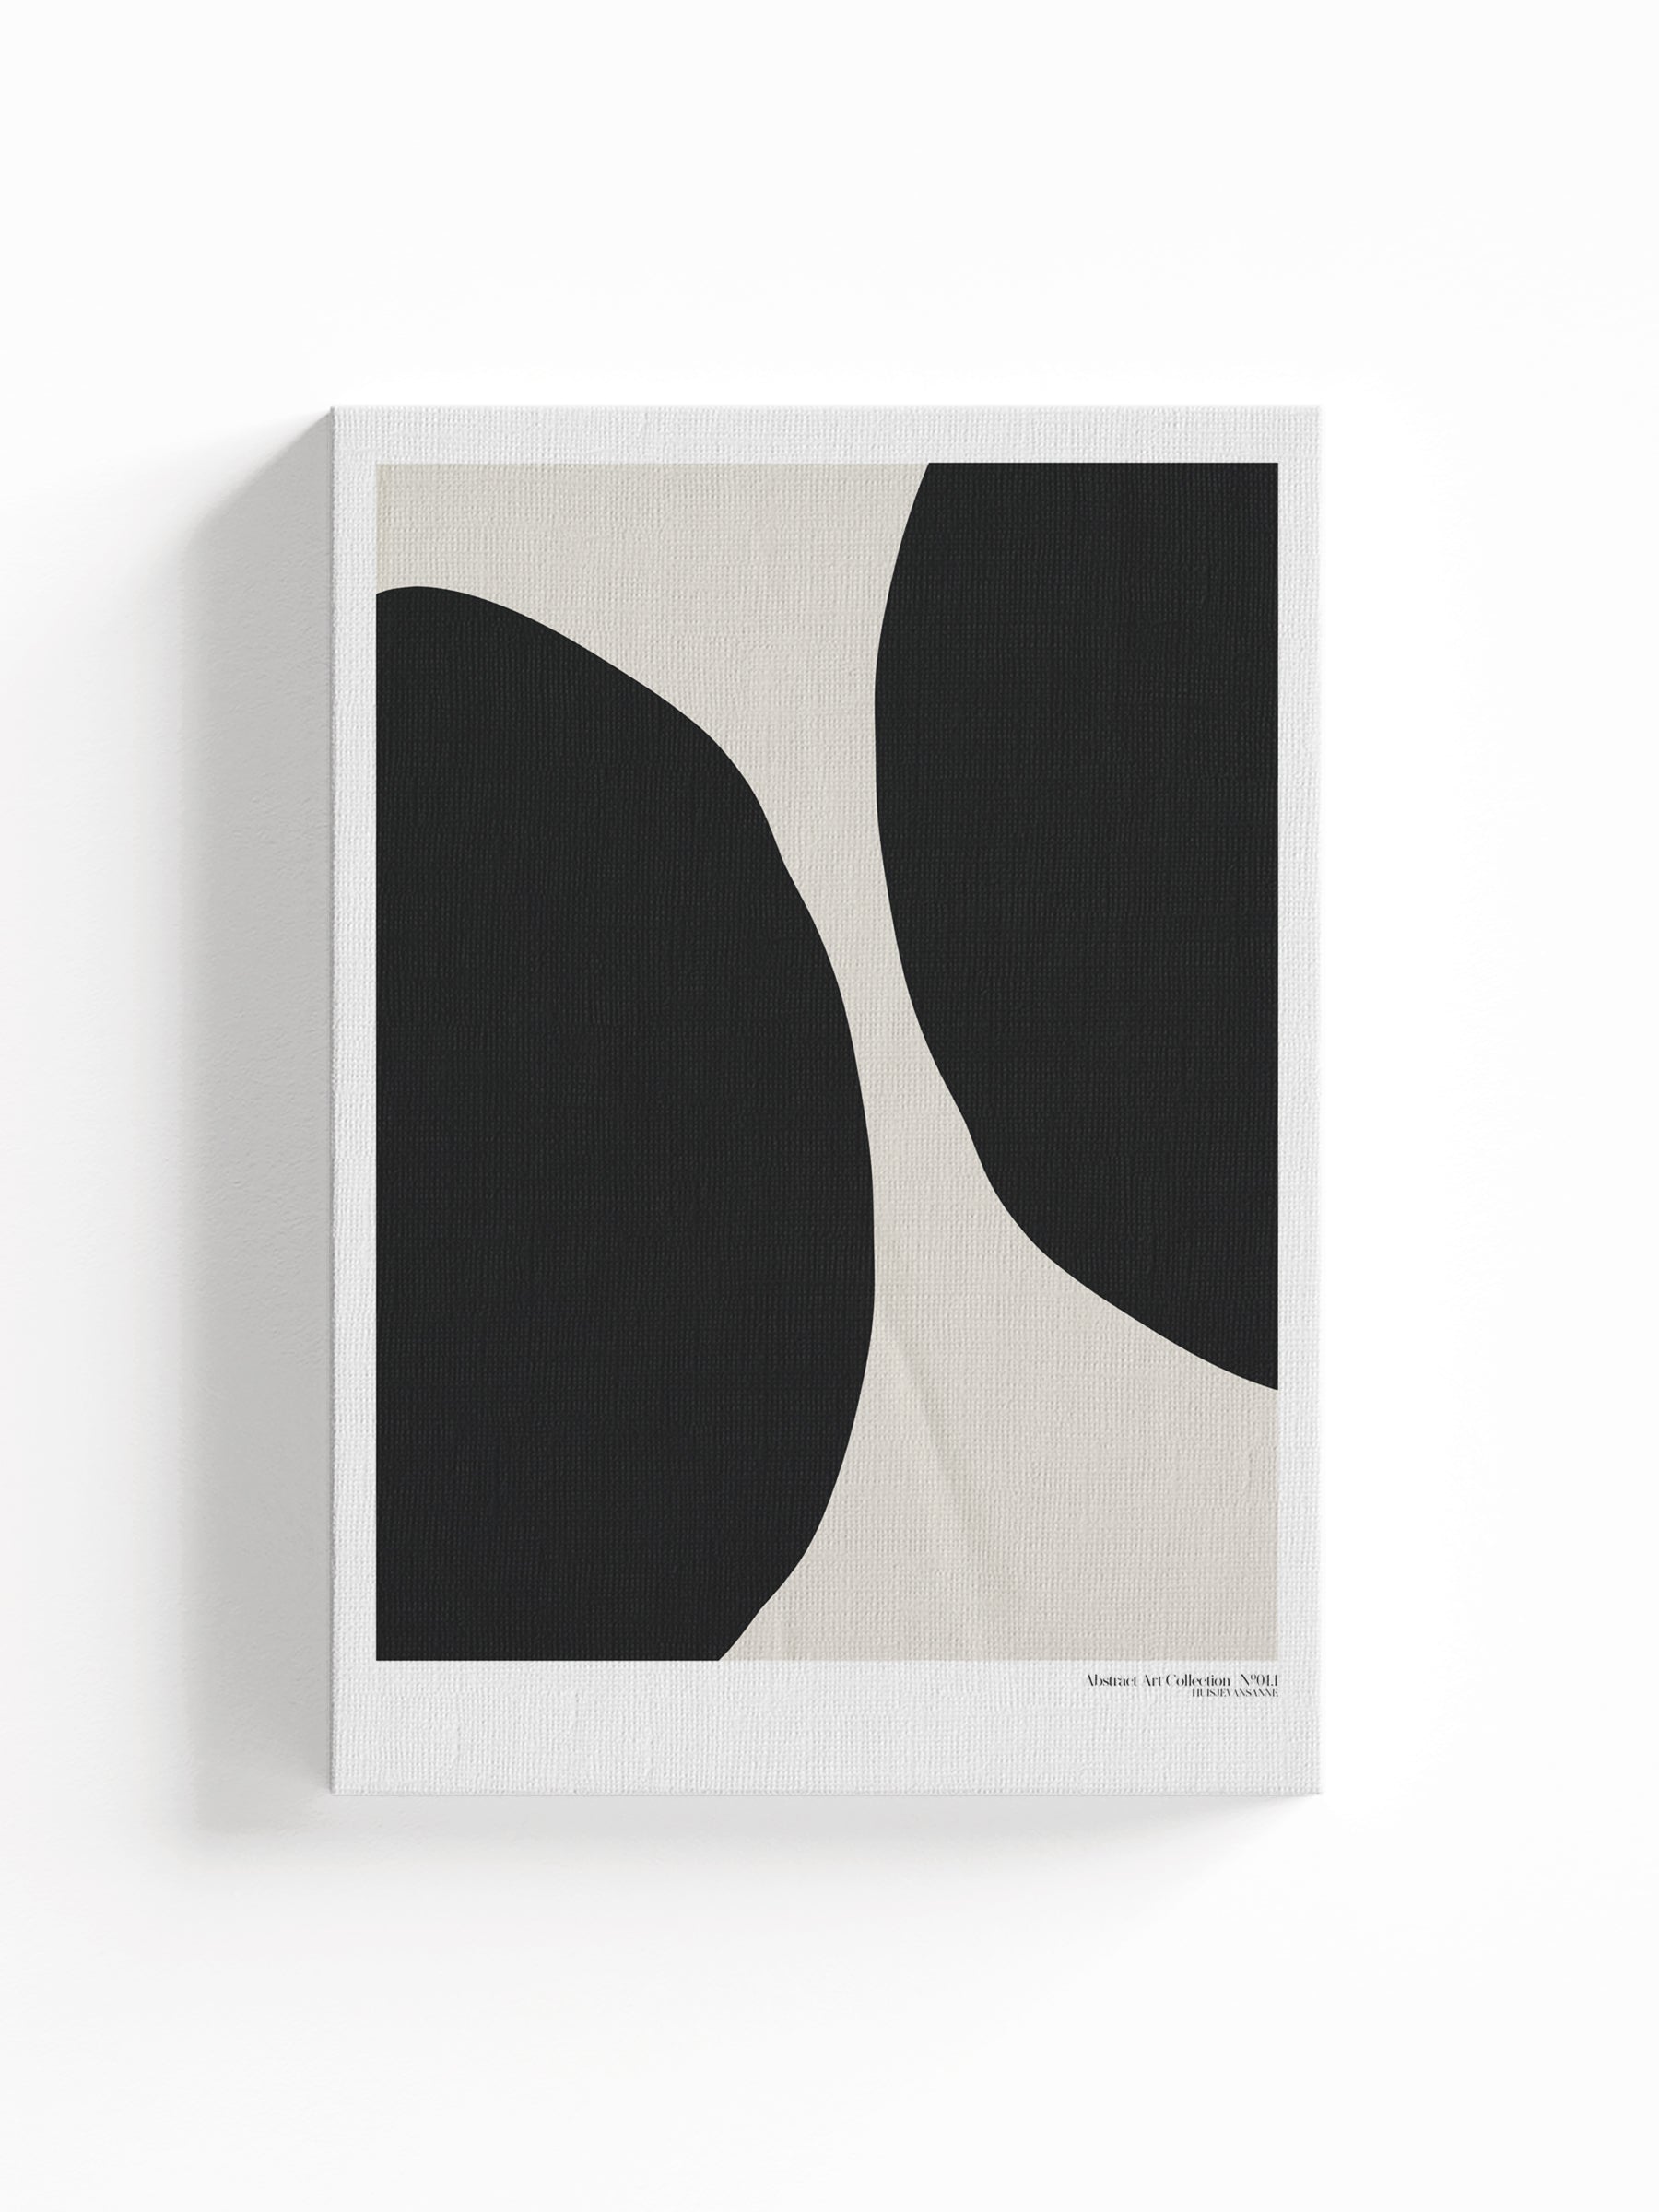 huisje van sanne abstract art canvas print beige met zwart en witte geometrische vormen